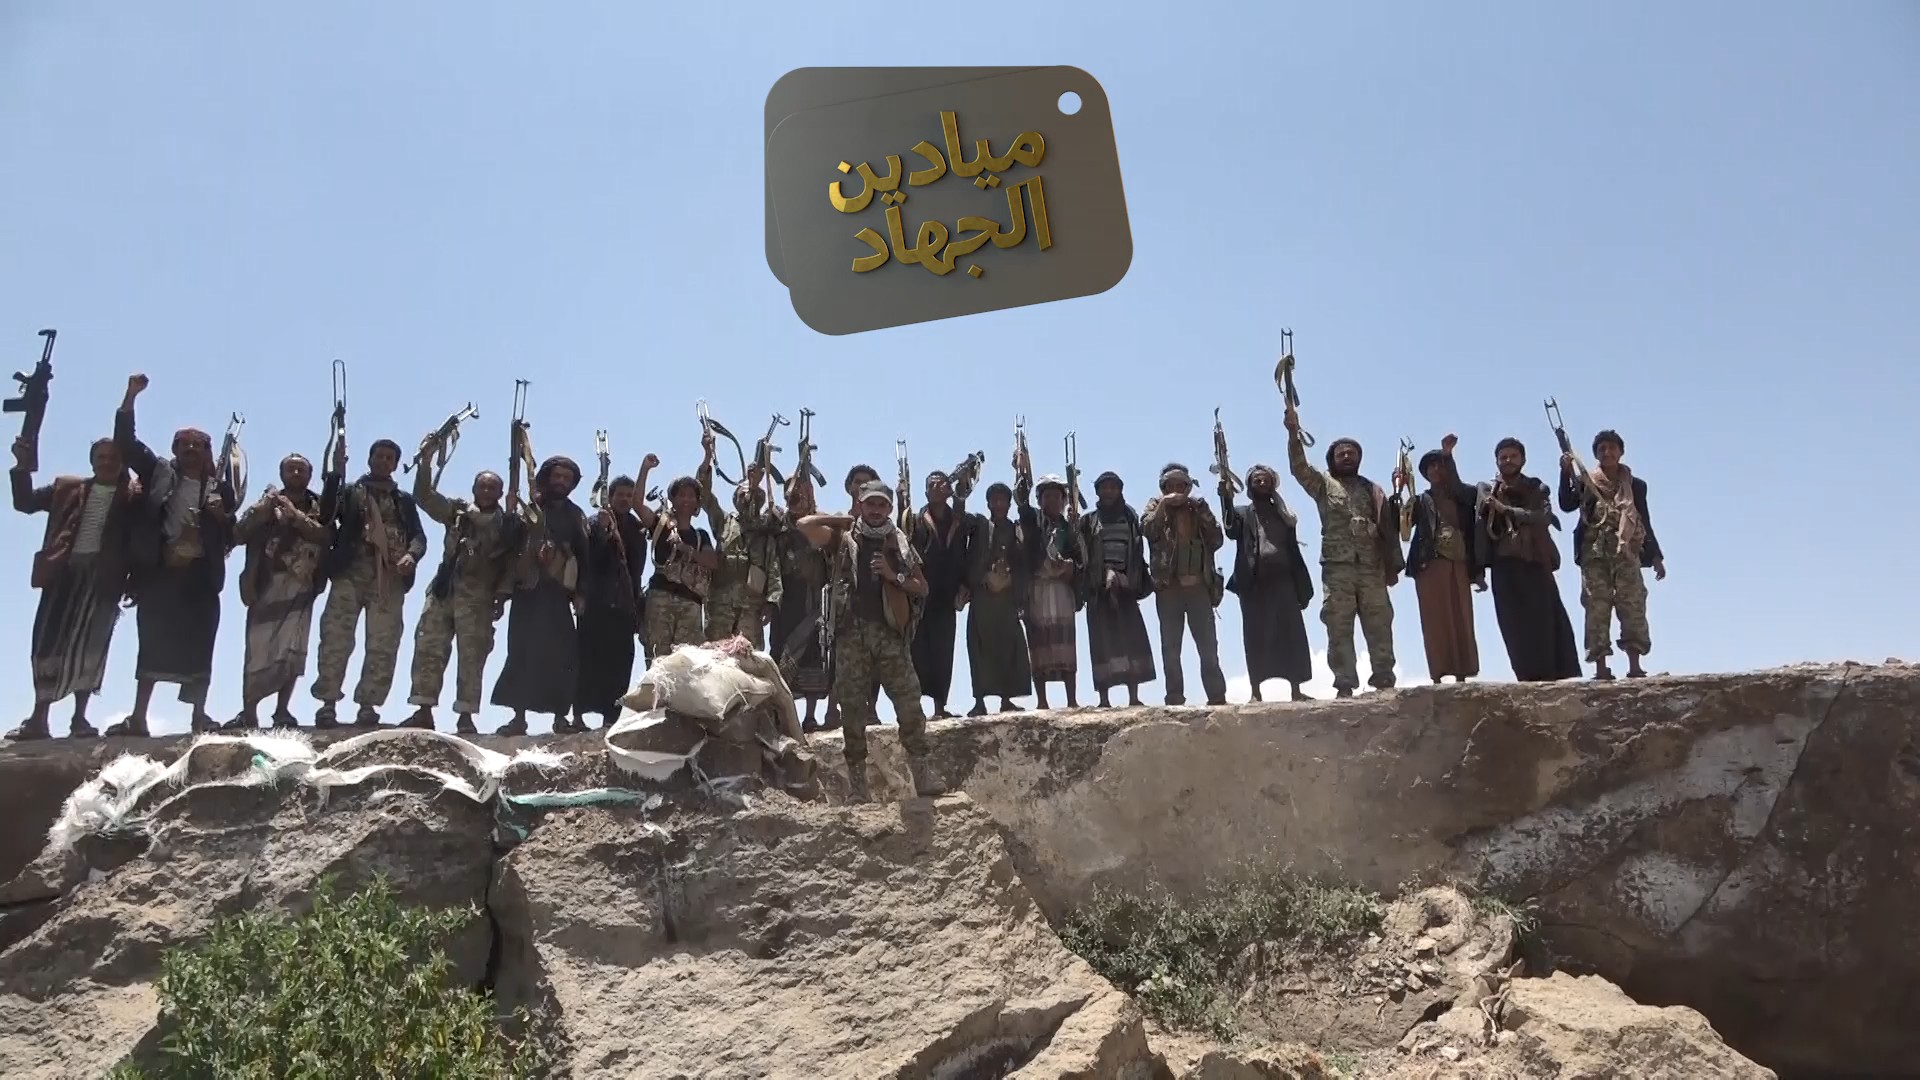 ميادين الجهاد – حلقة خاصة لعملية تطهير #قيفة من التكفيريين داعش والقاعدة في #البيضاء